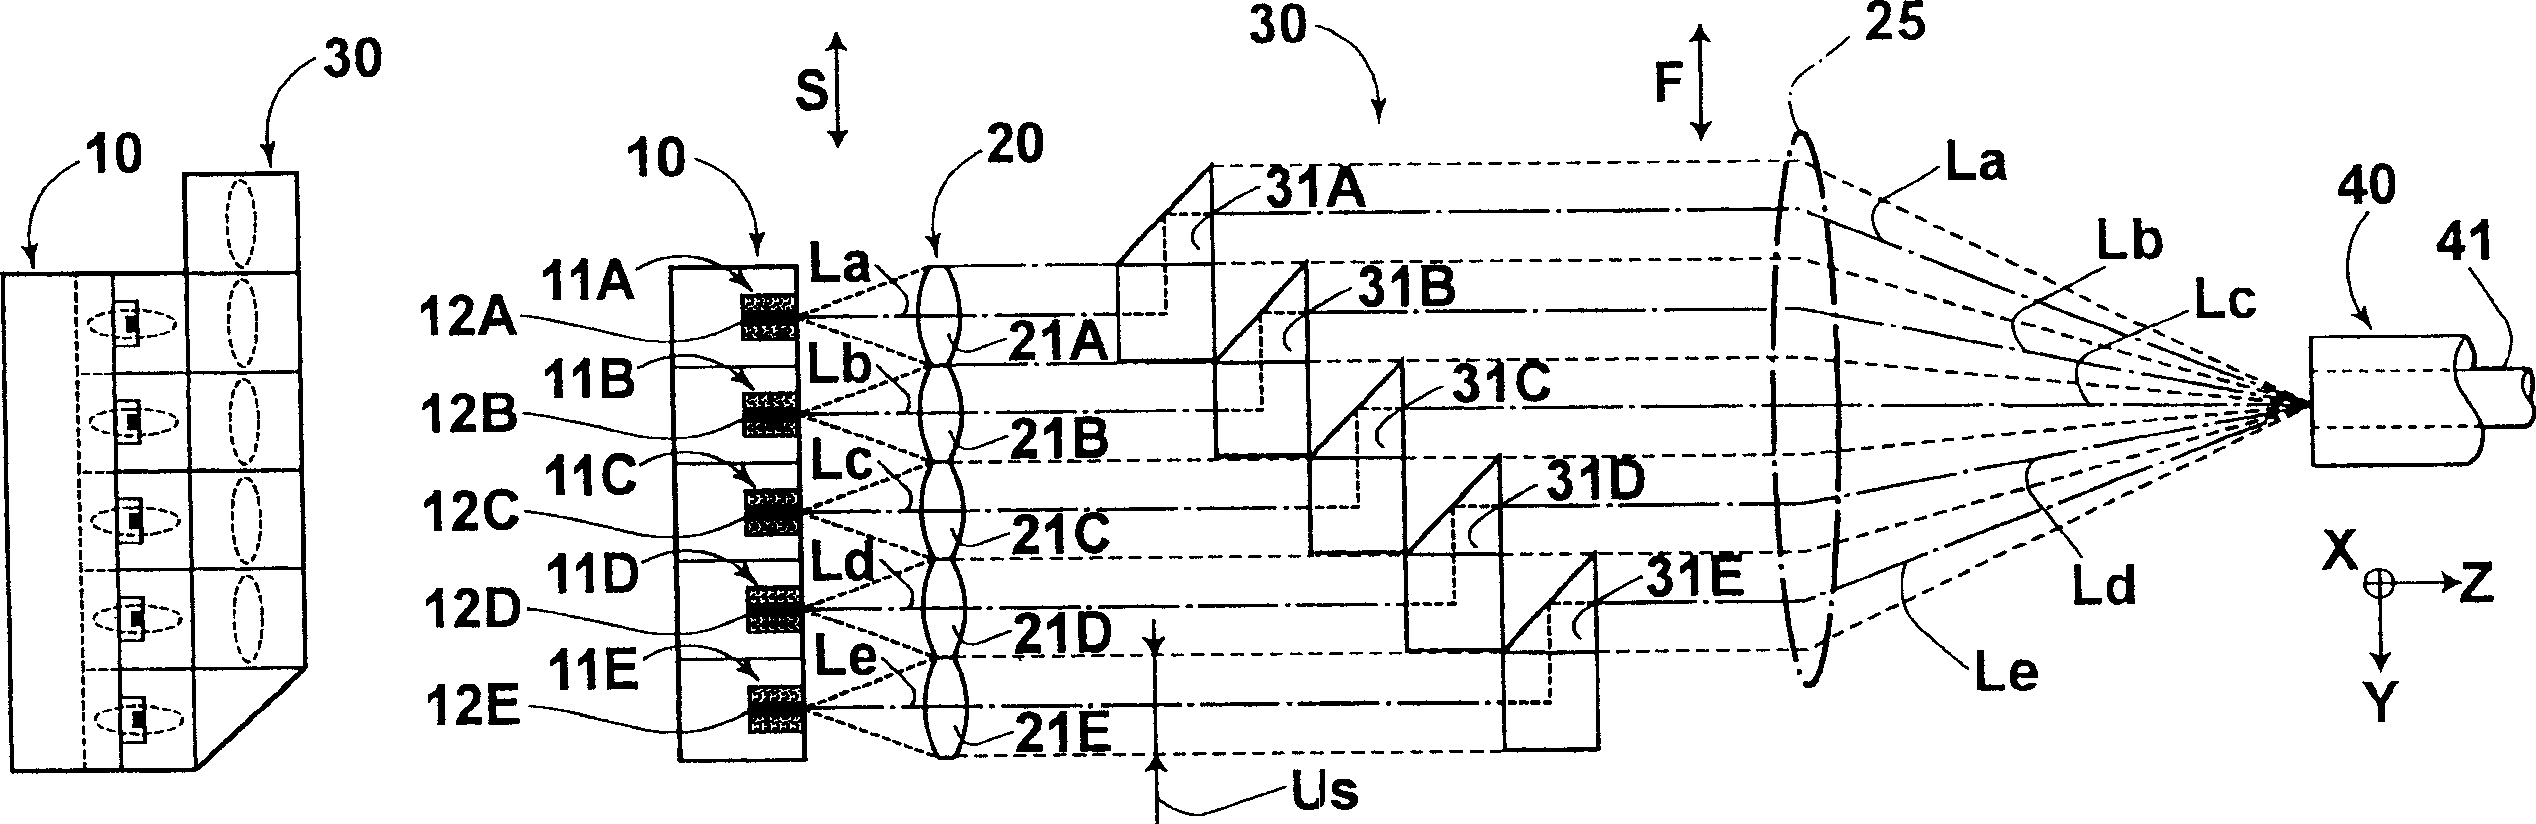 Laser multiplex transmission apparatus